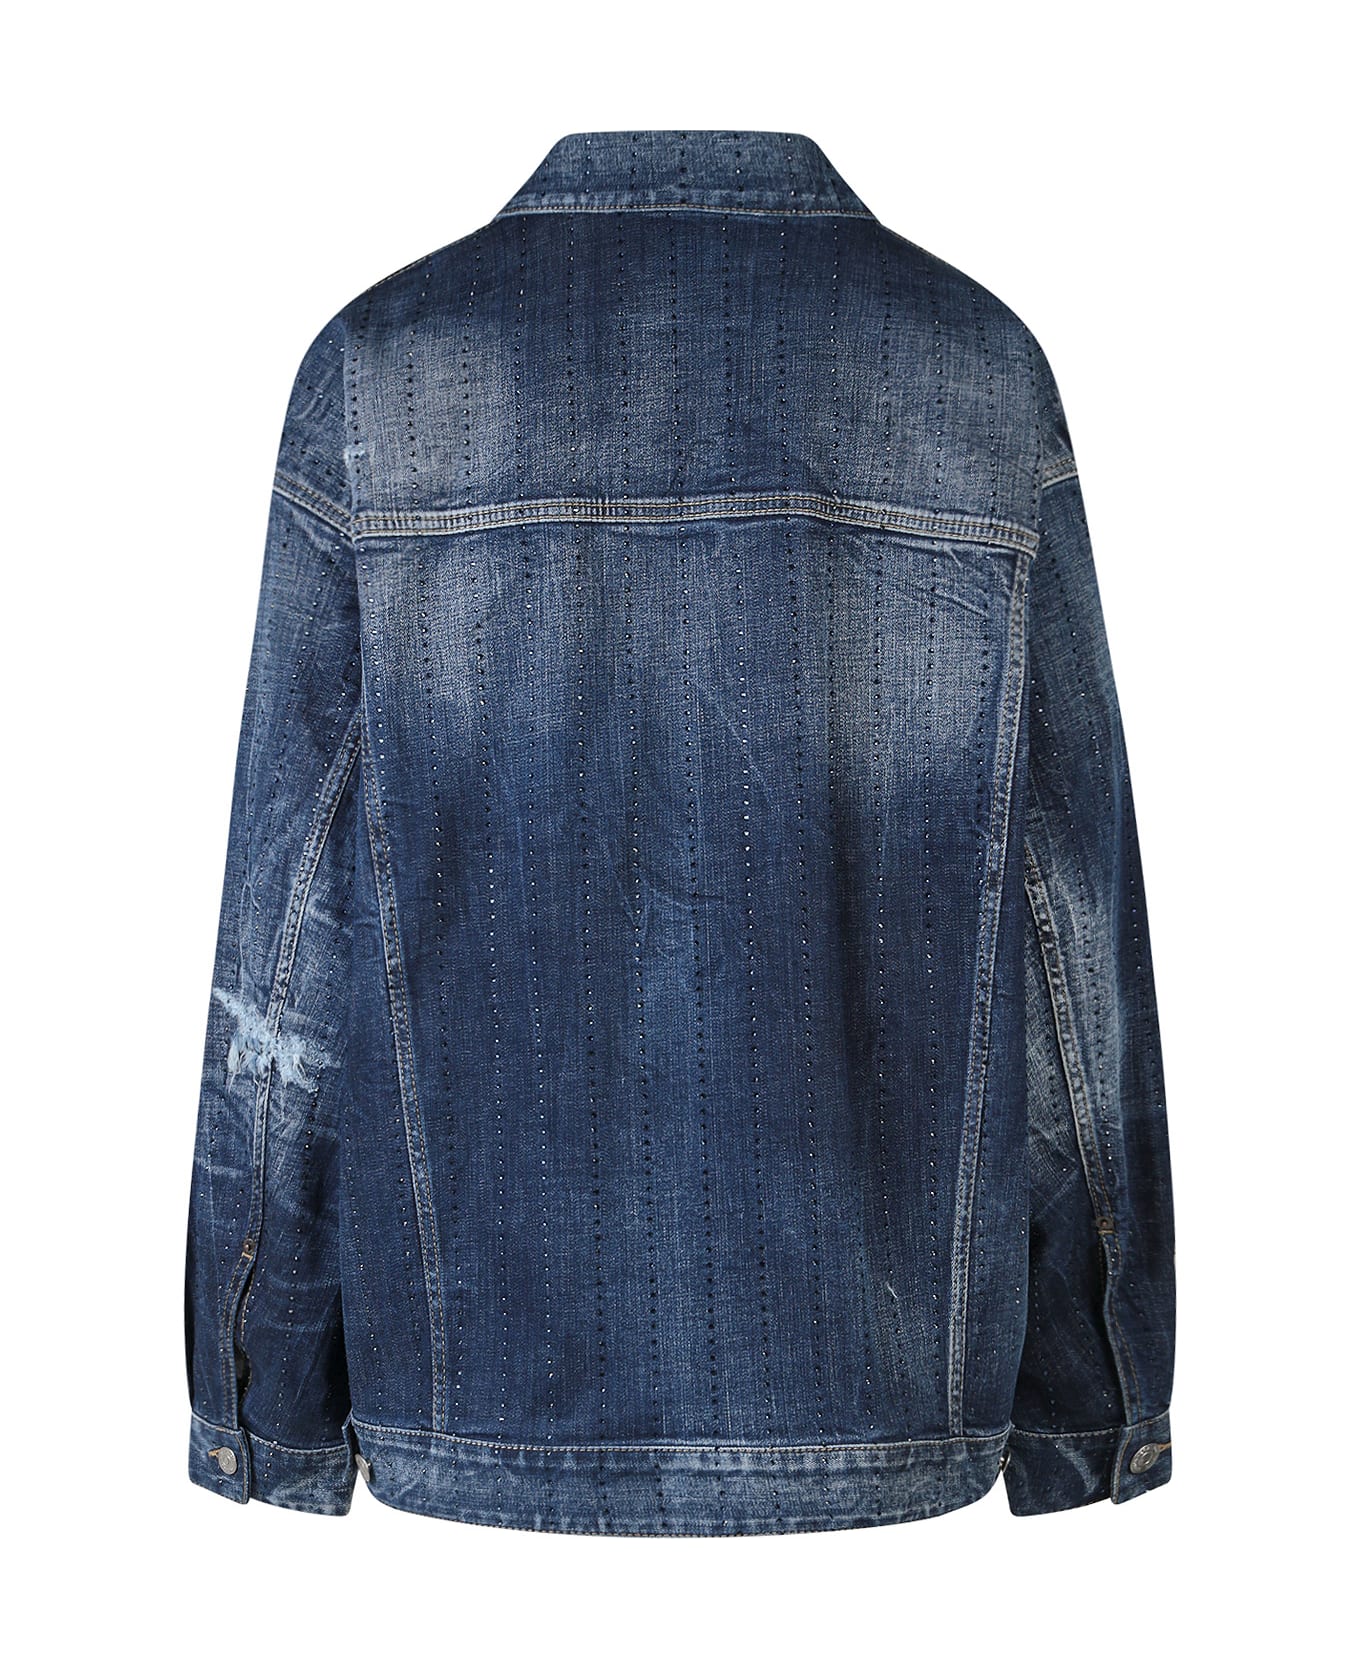 Dsquared2 Denim Jacket With Rhinestone Embellishment - Blue